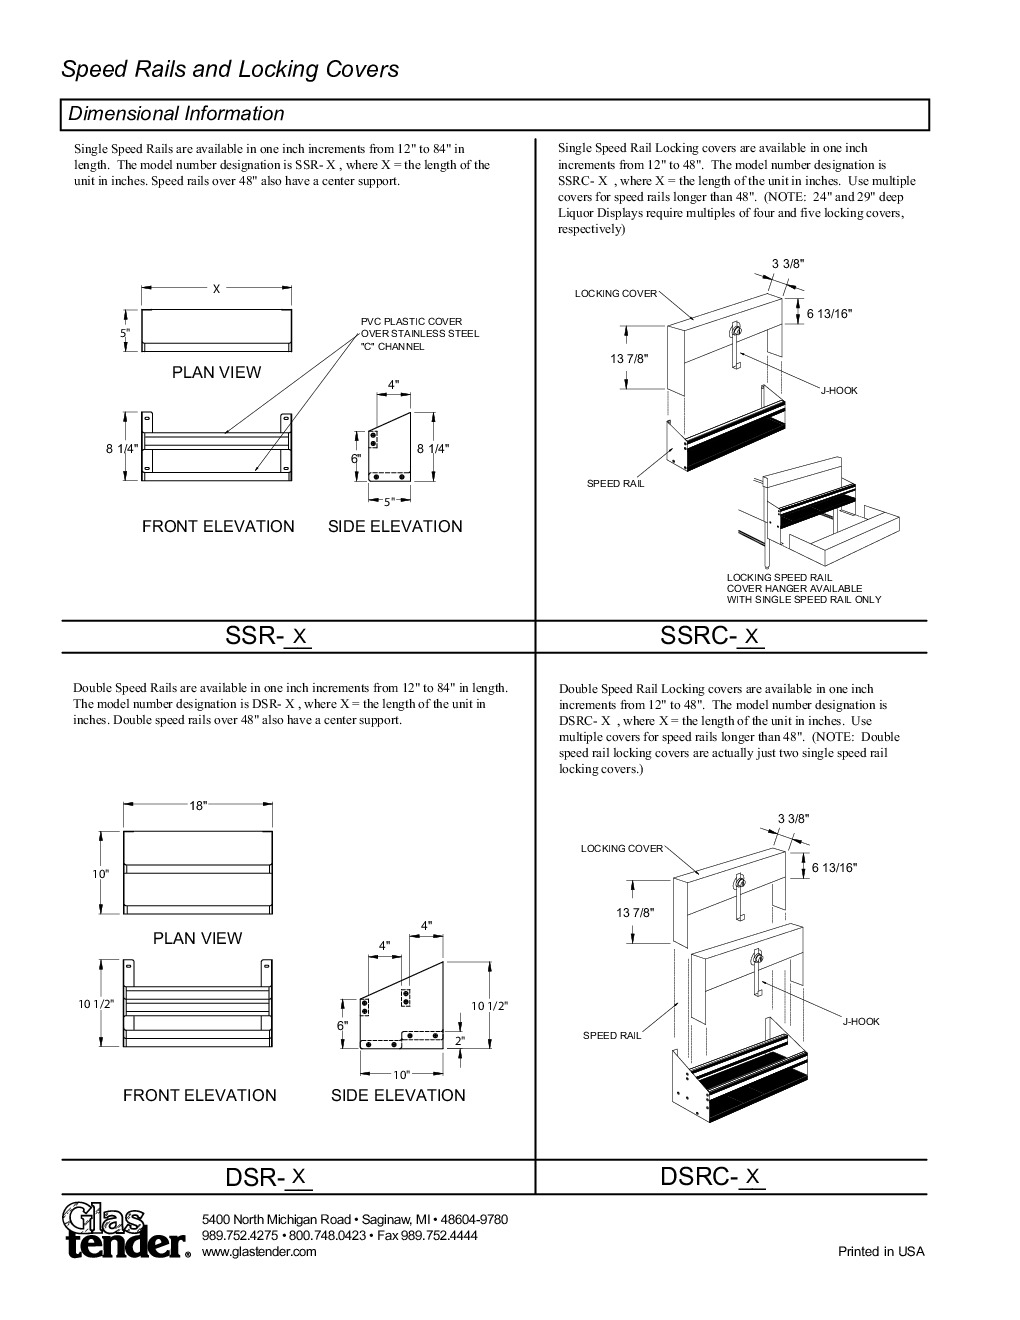 Glastender DSRC-44 Cover Speed Rail / Rack